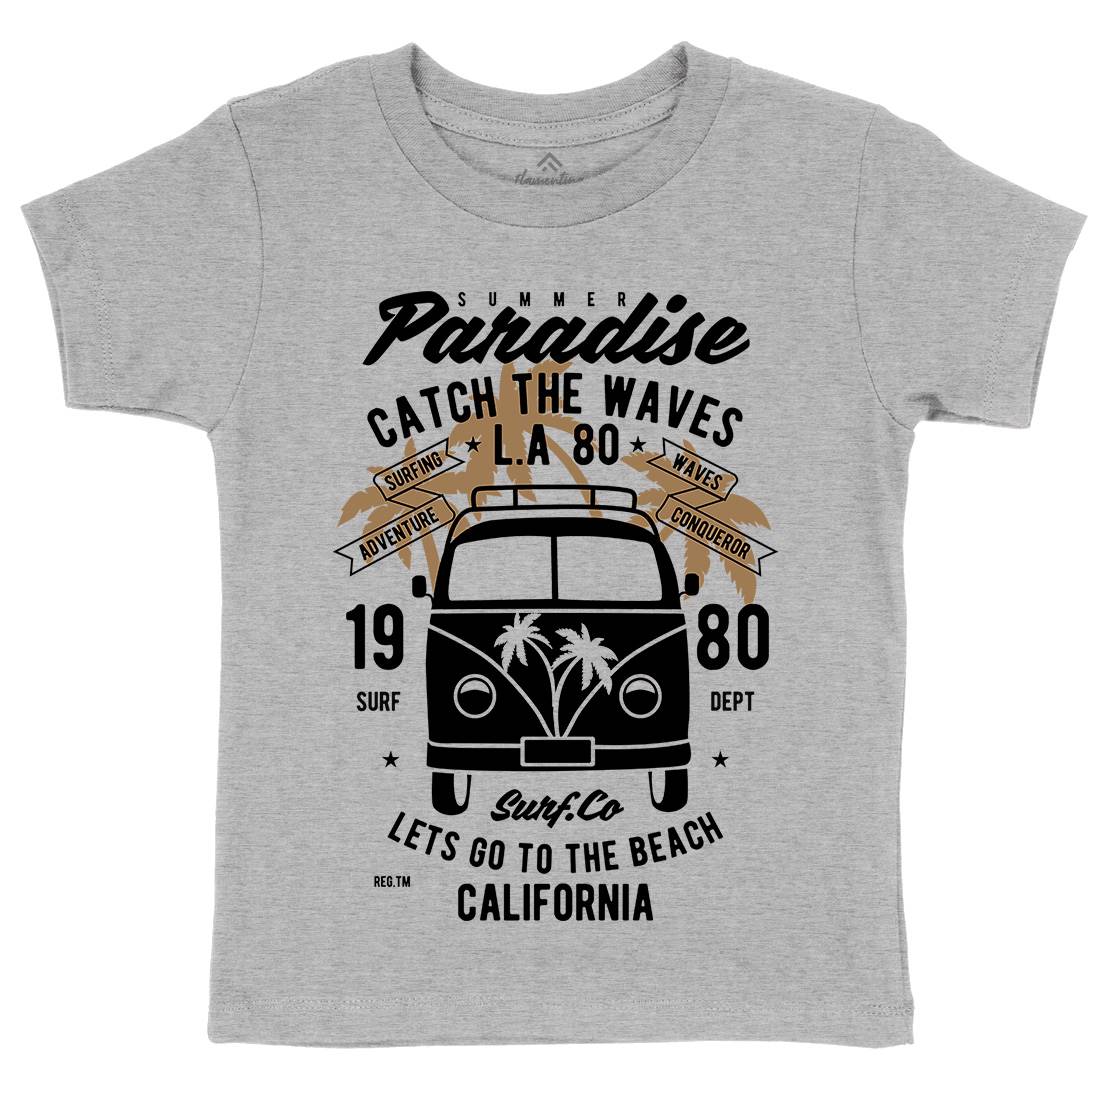 Catch The Waves Surfing Van Kids Crew Neck T-Shirt Surf B393